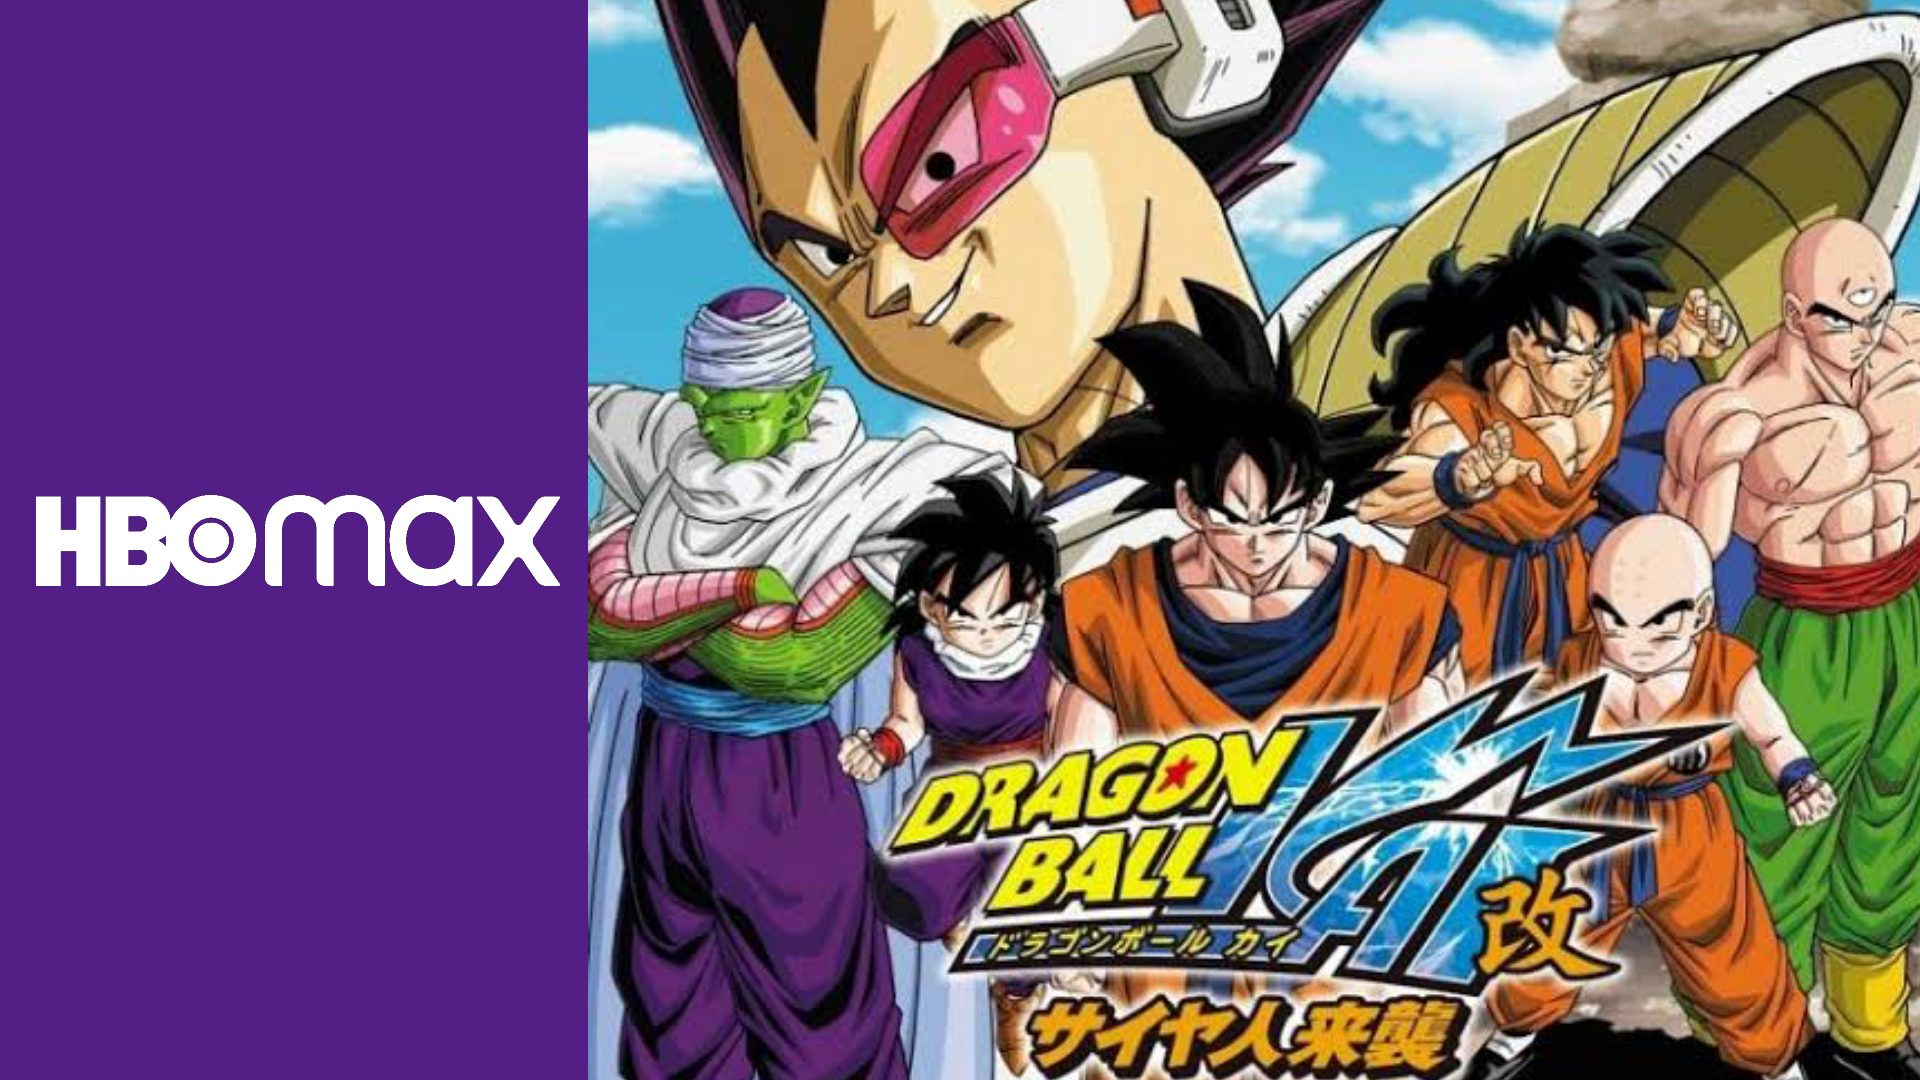 Agora sim! Dragon Ball Z Kai chega em Julho na HBO Max - TVLaint Brasil